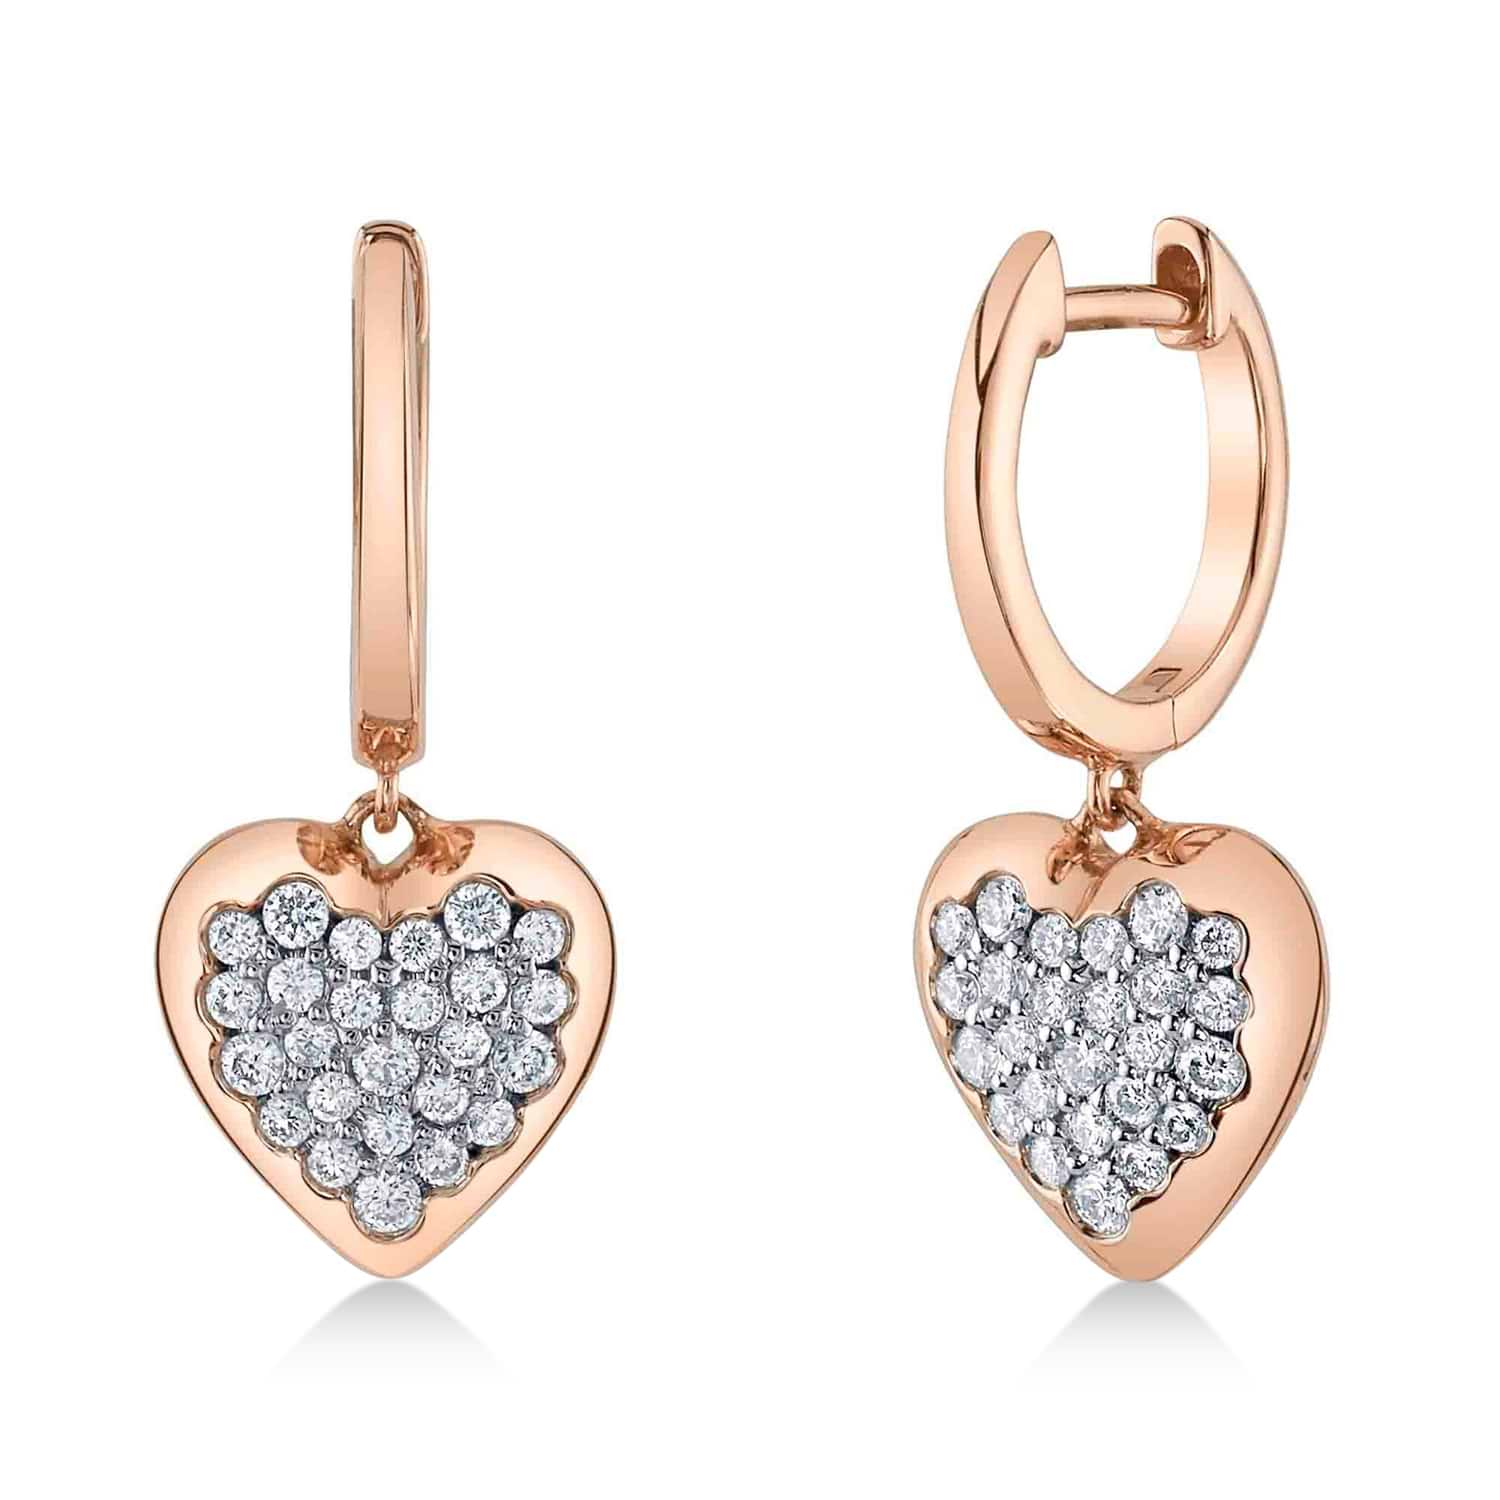 Diamond Heart Drop Earrings 14K Rose Gold (0.44ct)